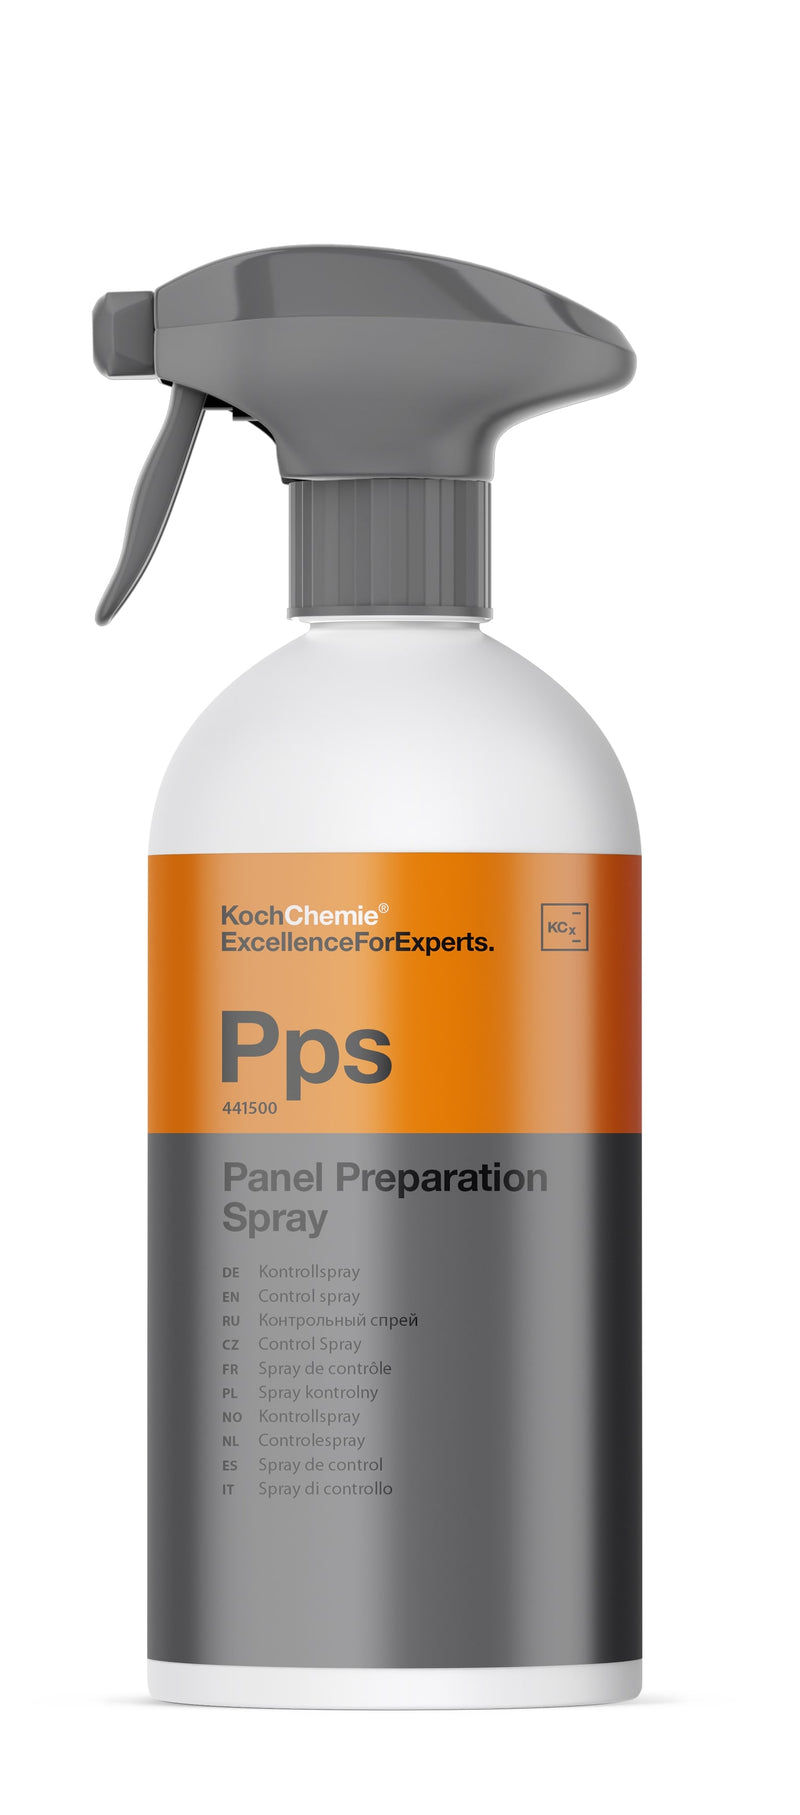 Koch Chemie Pps Panel Preparation Spray Kontrollspray IPA